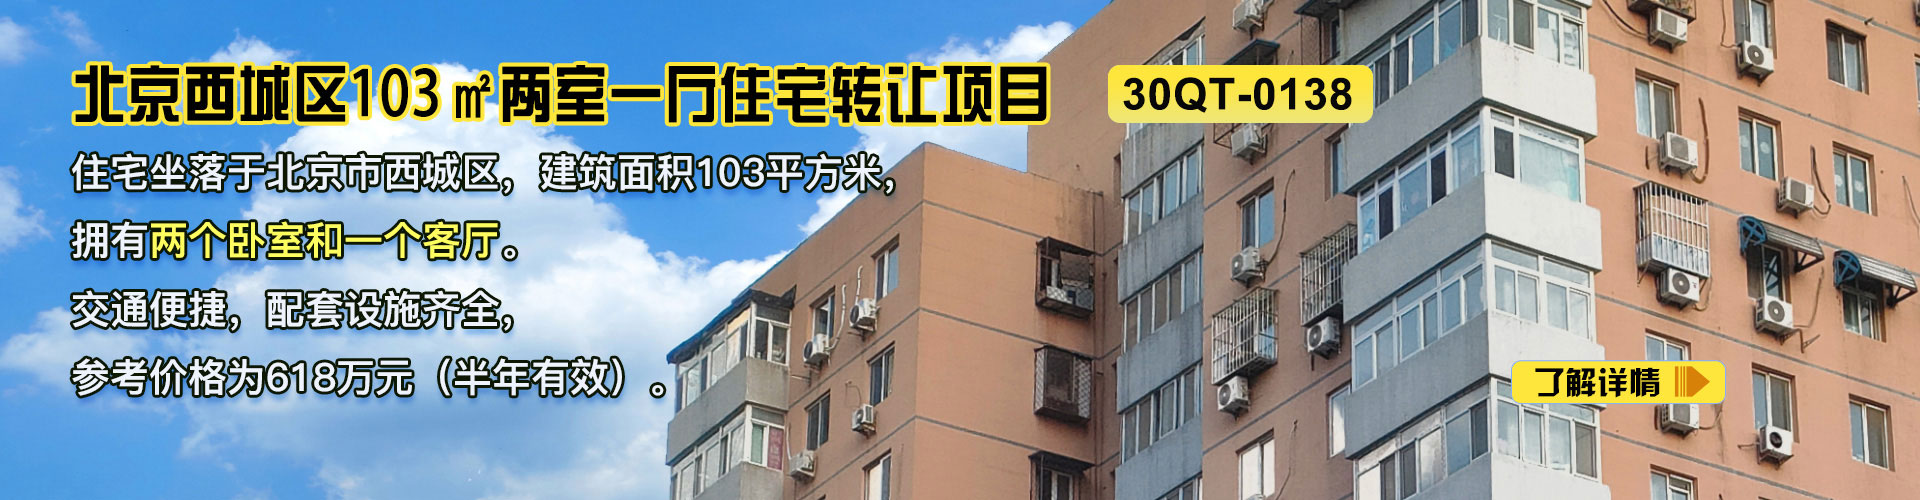 住宅|北京西城区103㎡两室一厅住宅转让项目30QT-0138